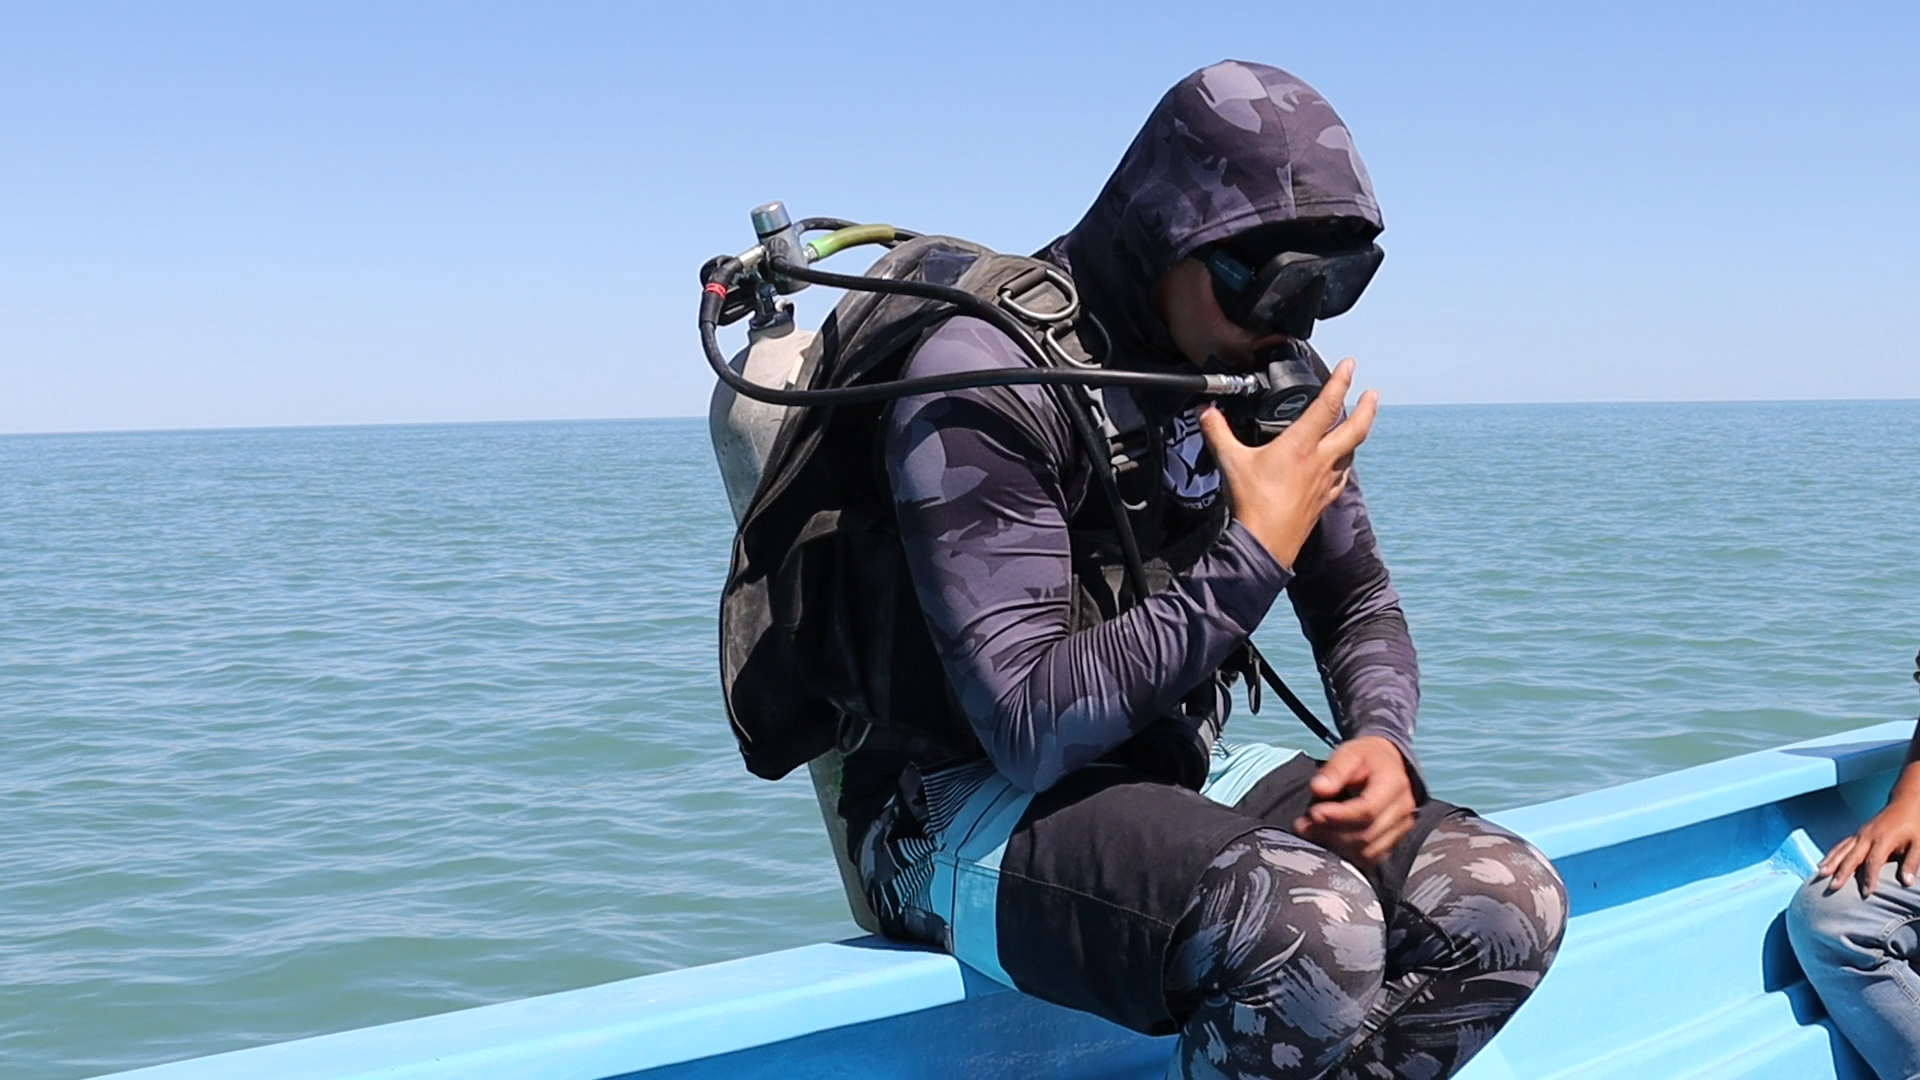 Héctor Iñiguez, buzo profesional, extractor de redes y biólogo marino en Pesca ABC, se prepara para entrar al mar y comenzar con trabajos de recuperación de redes de pesca fantasma en el mar. Crédito: Luis Madrid/ Animal Político